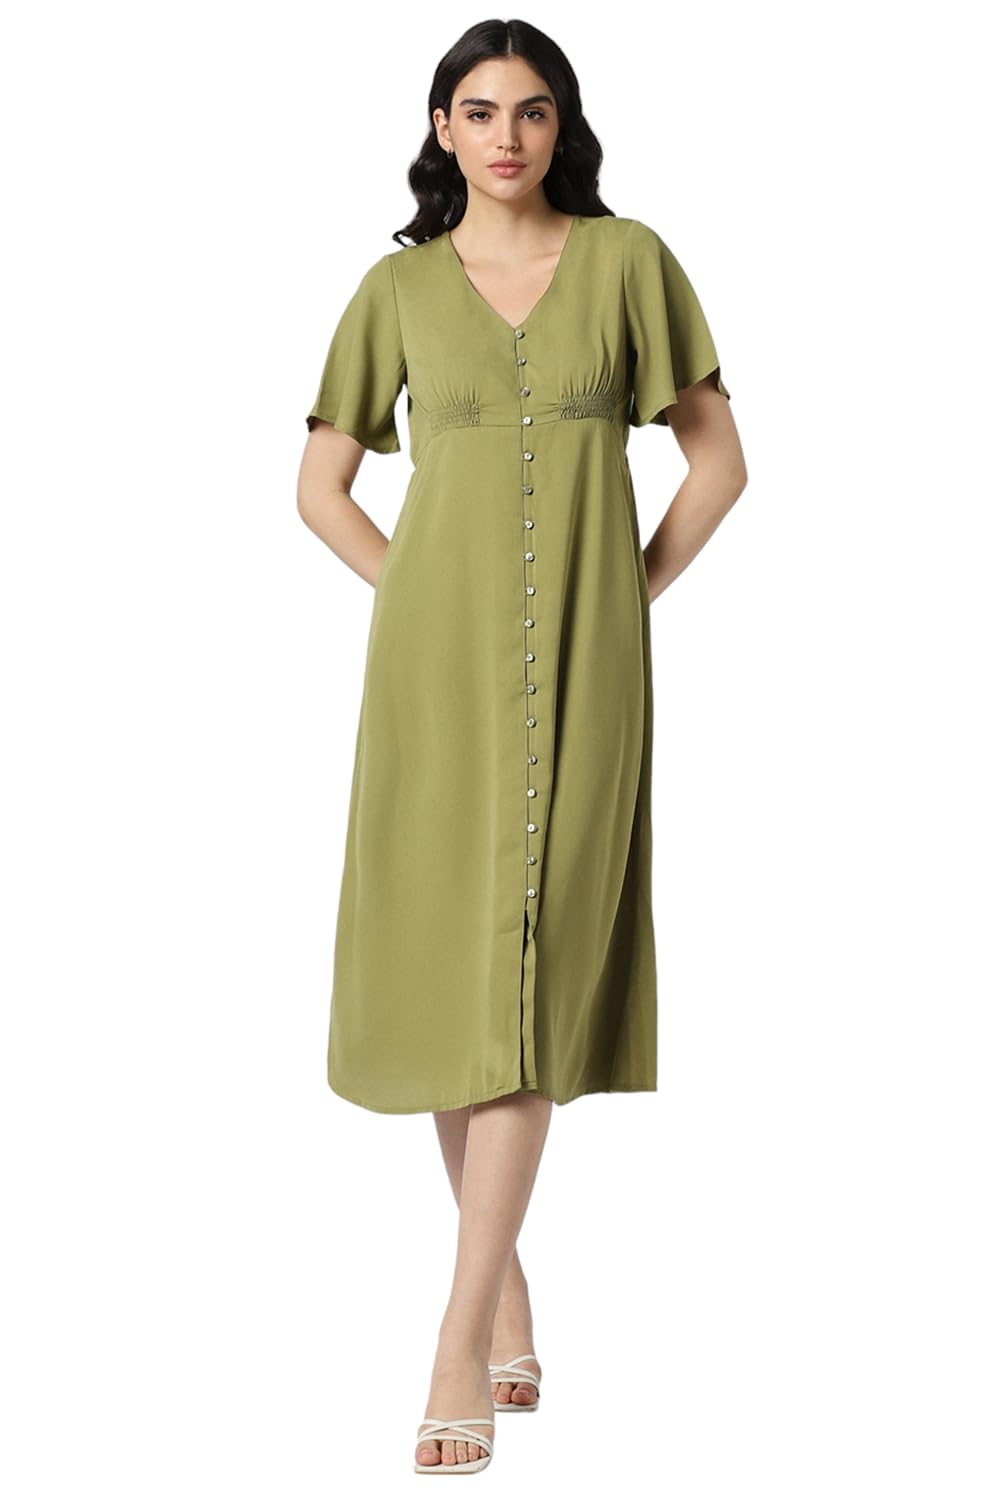 Van Heusen Women's Polyester Asymmetrical Calf Length Dress (VWDRFRGFF44319_Olive